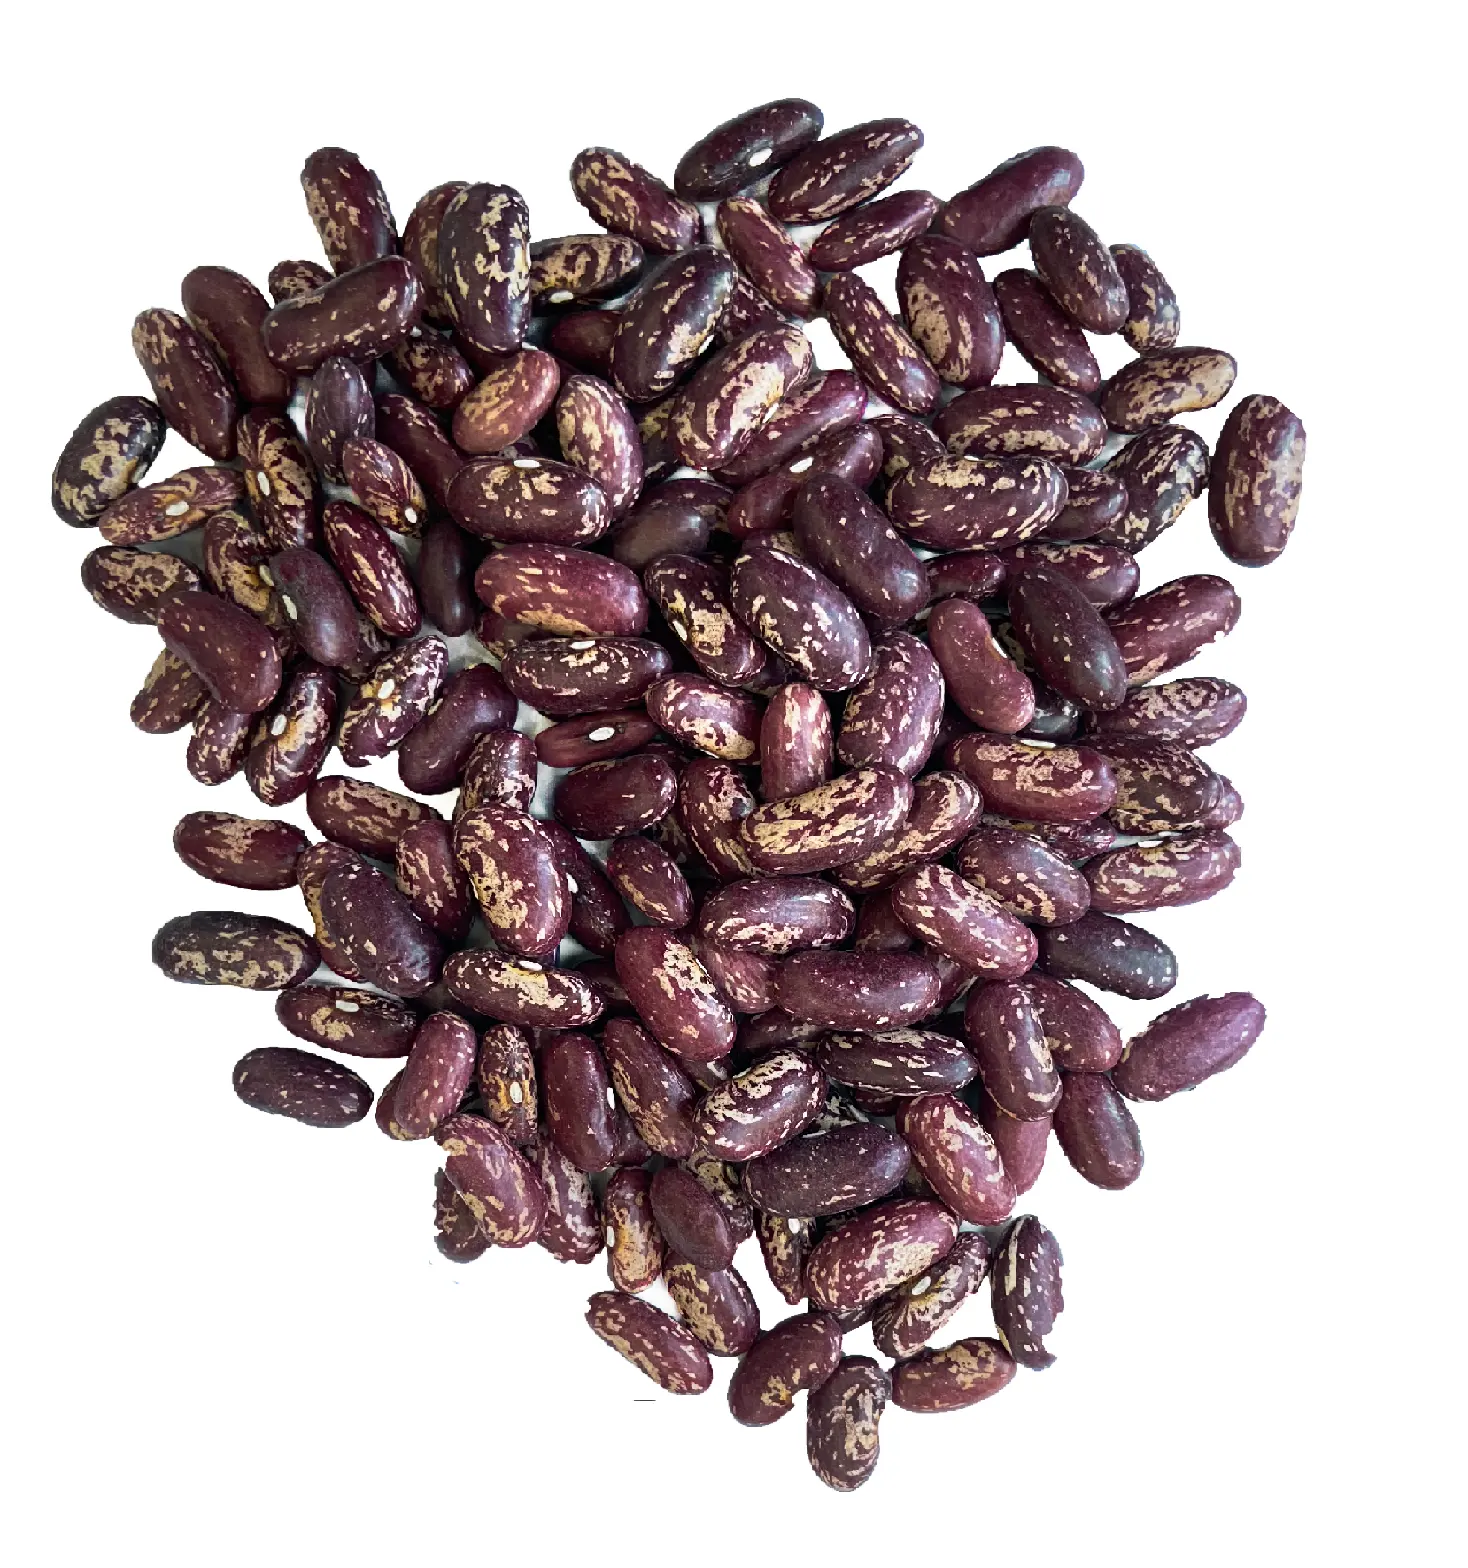 작물 2021 10 월 도매 고품질 우즈베키스탄 가방 25 kg 천연 말린 붉은 얼룩덜룩 한 신장 콩